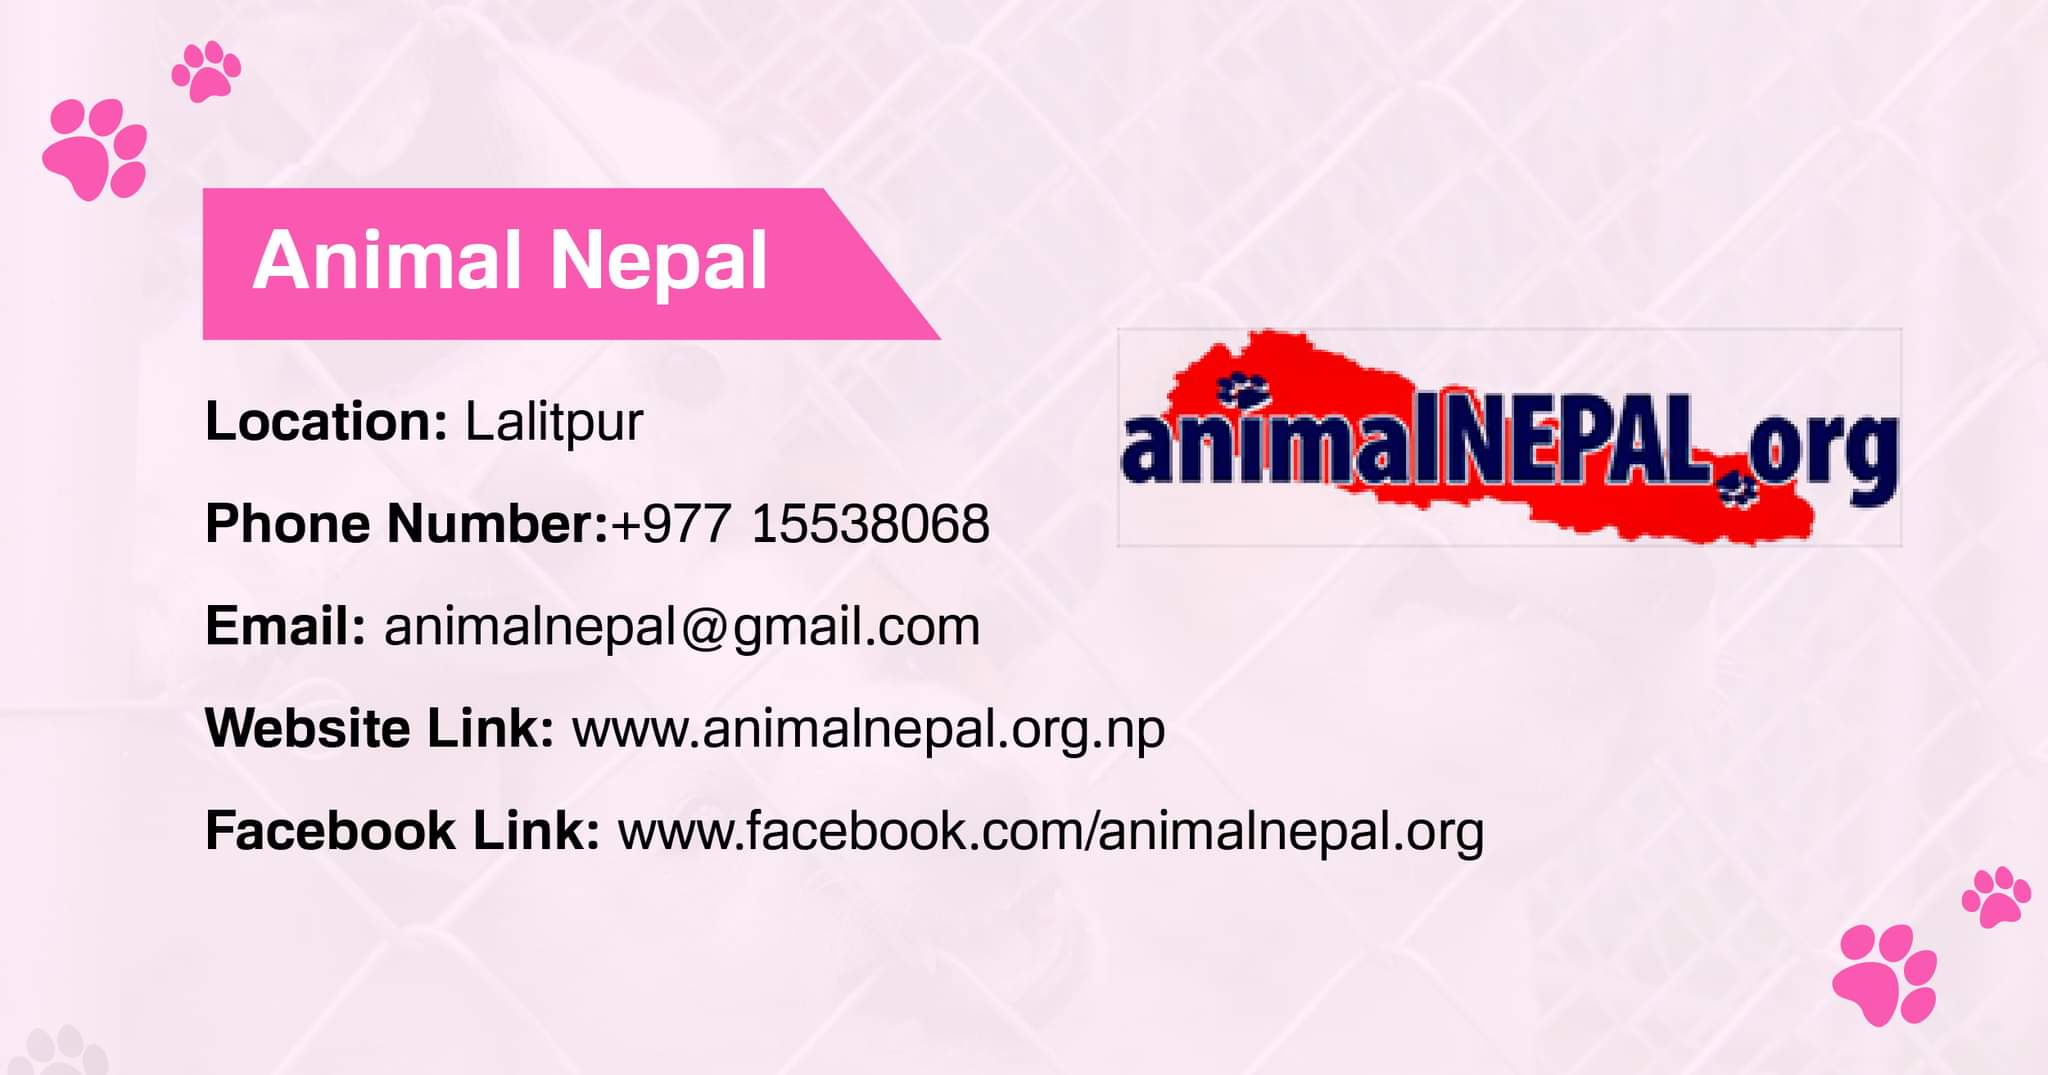 Animal Nepal Dog adoption